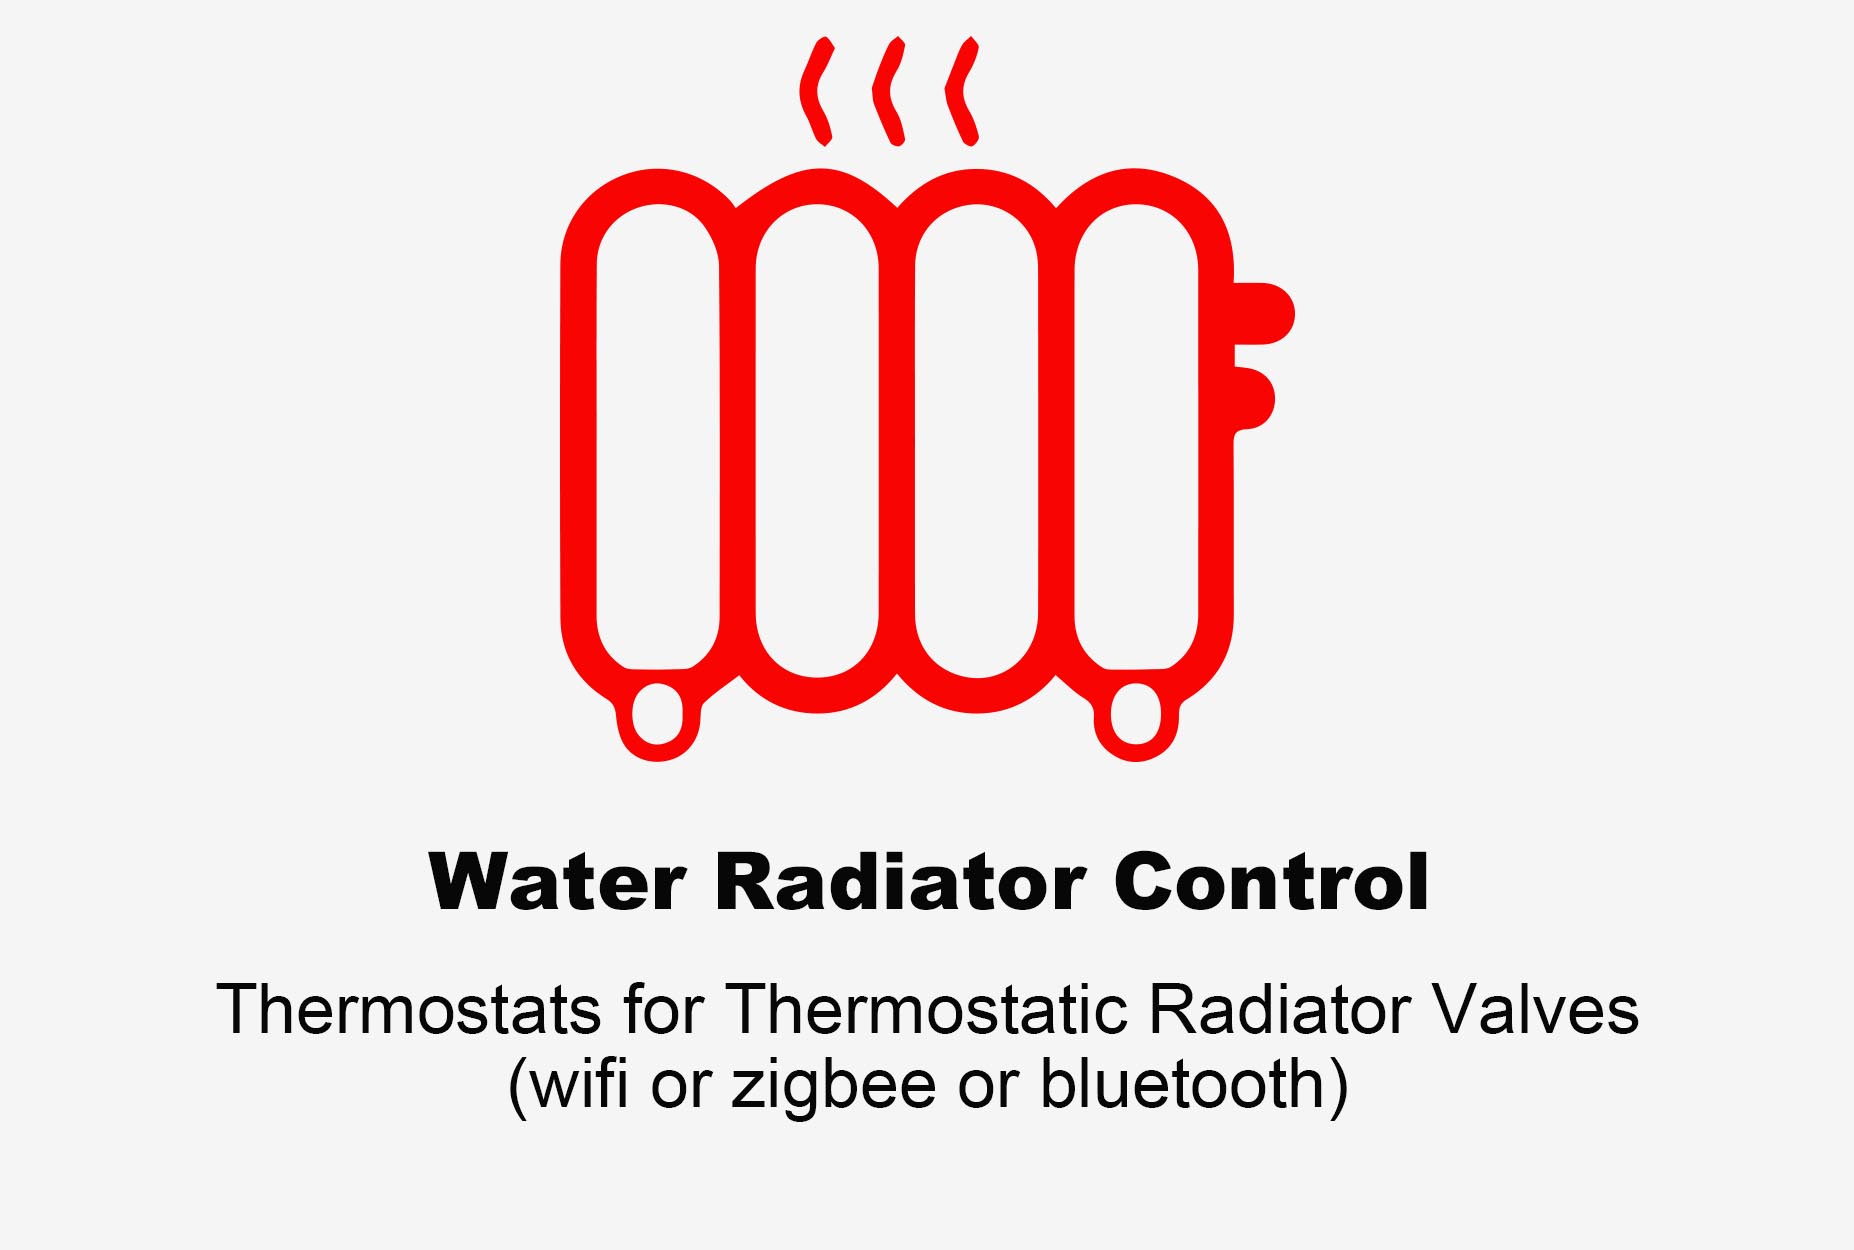 Termostat radiator apă, termostat Bluetooth, termostat radiator Zigbee, termostat radiator Wifi